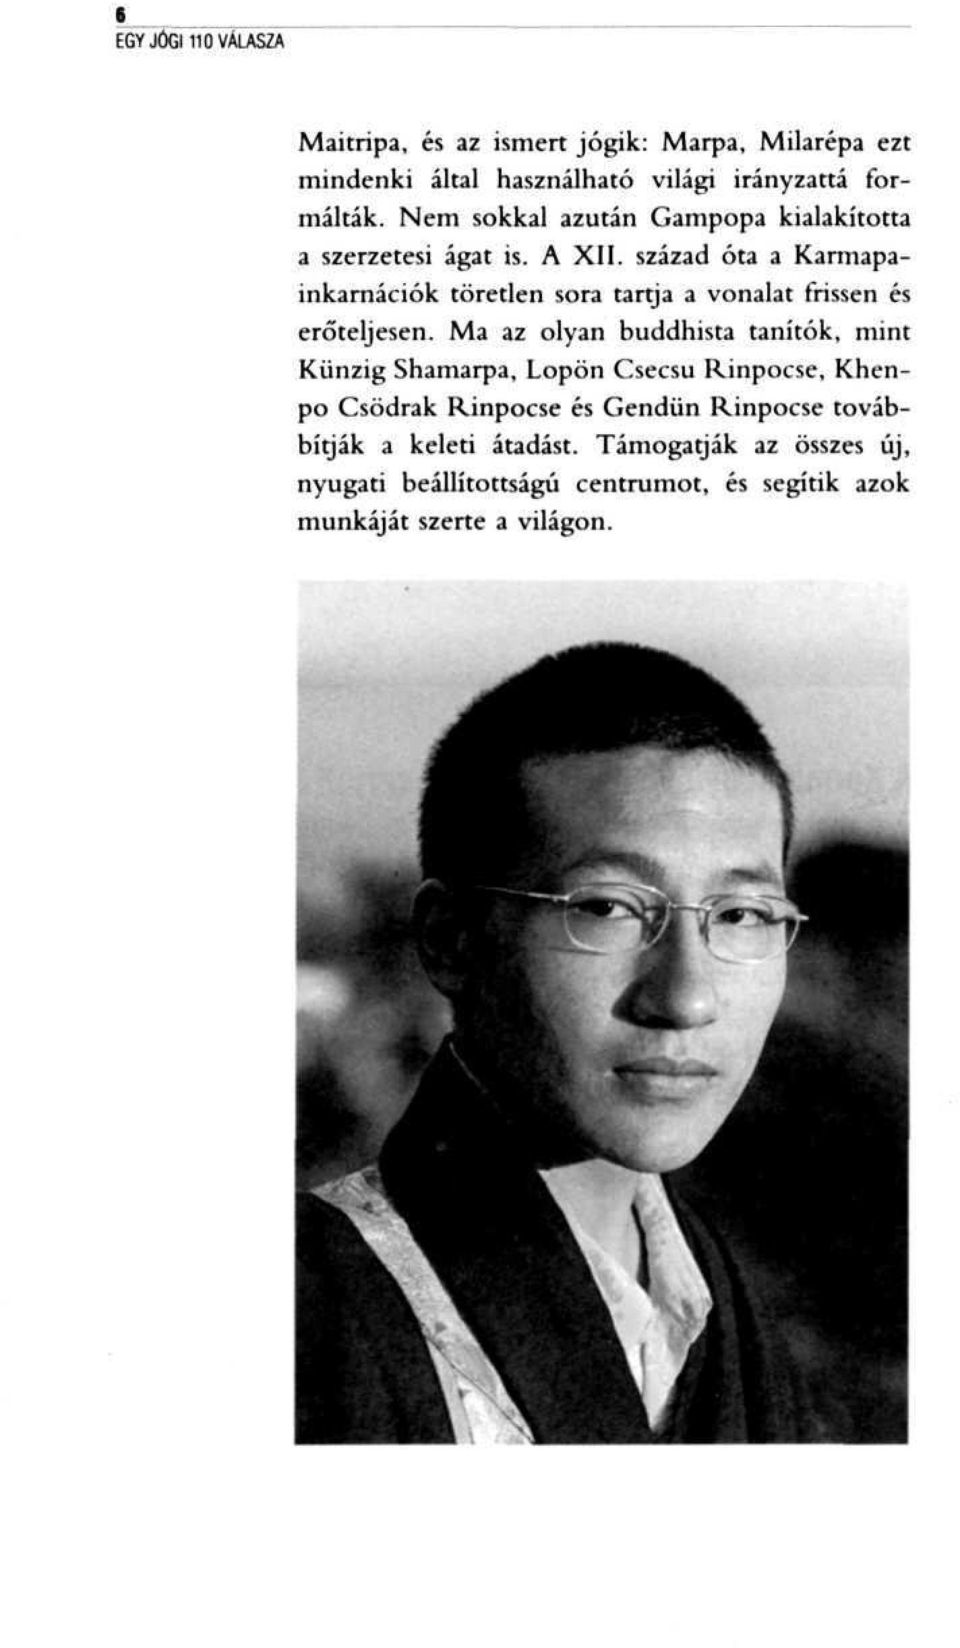 század óta a Karmapainkarnációk töretlen sora tartja a vonalat frissen és erőteljesen.